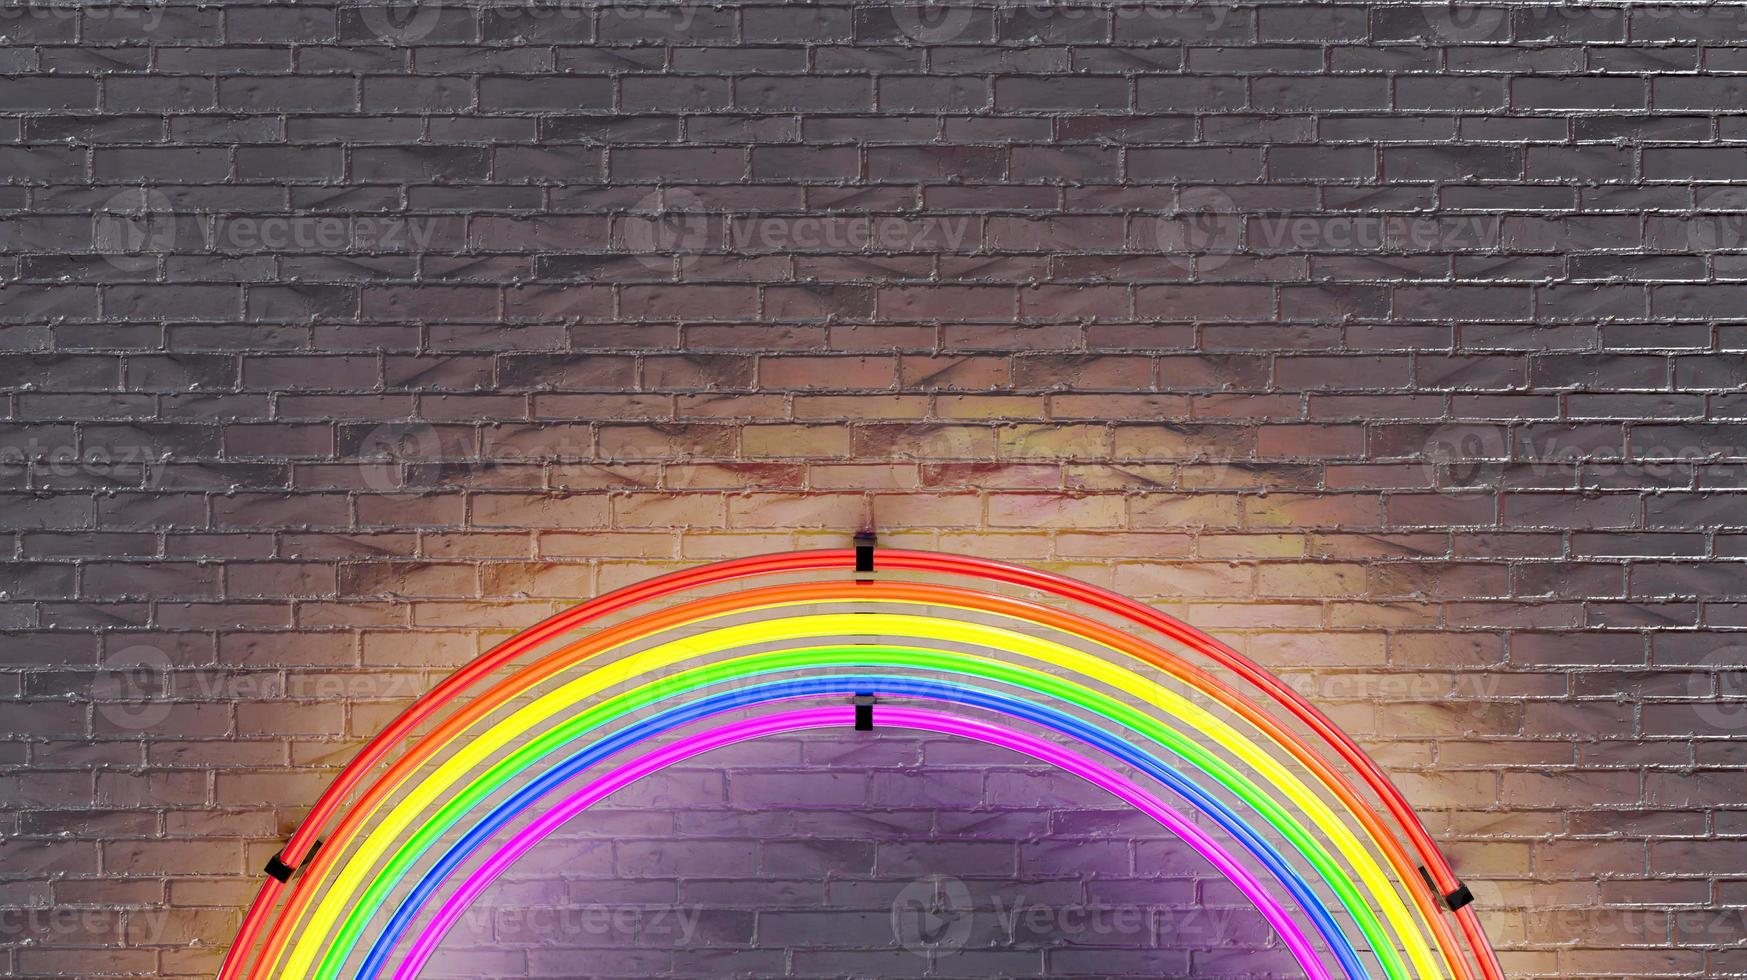 lampada al neon arcobaleno sul muro di mattoni. rendering 3d 3016020 Stock  Photo su Vecteezy